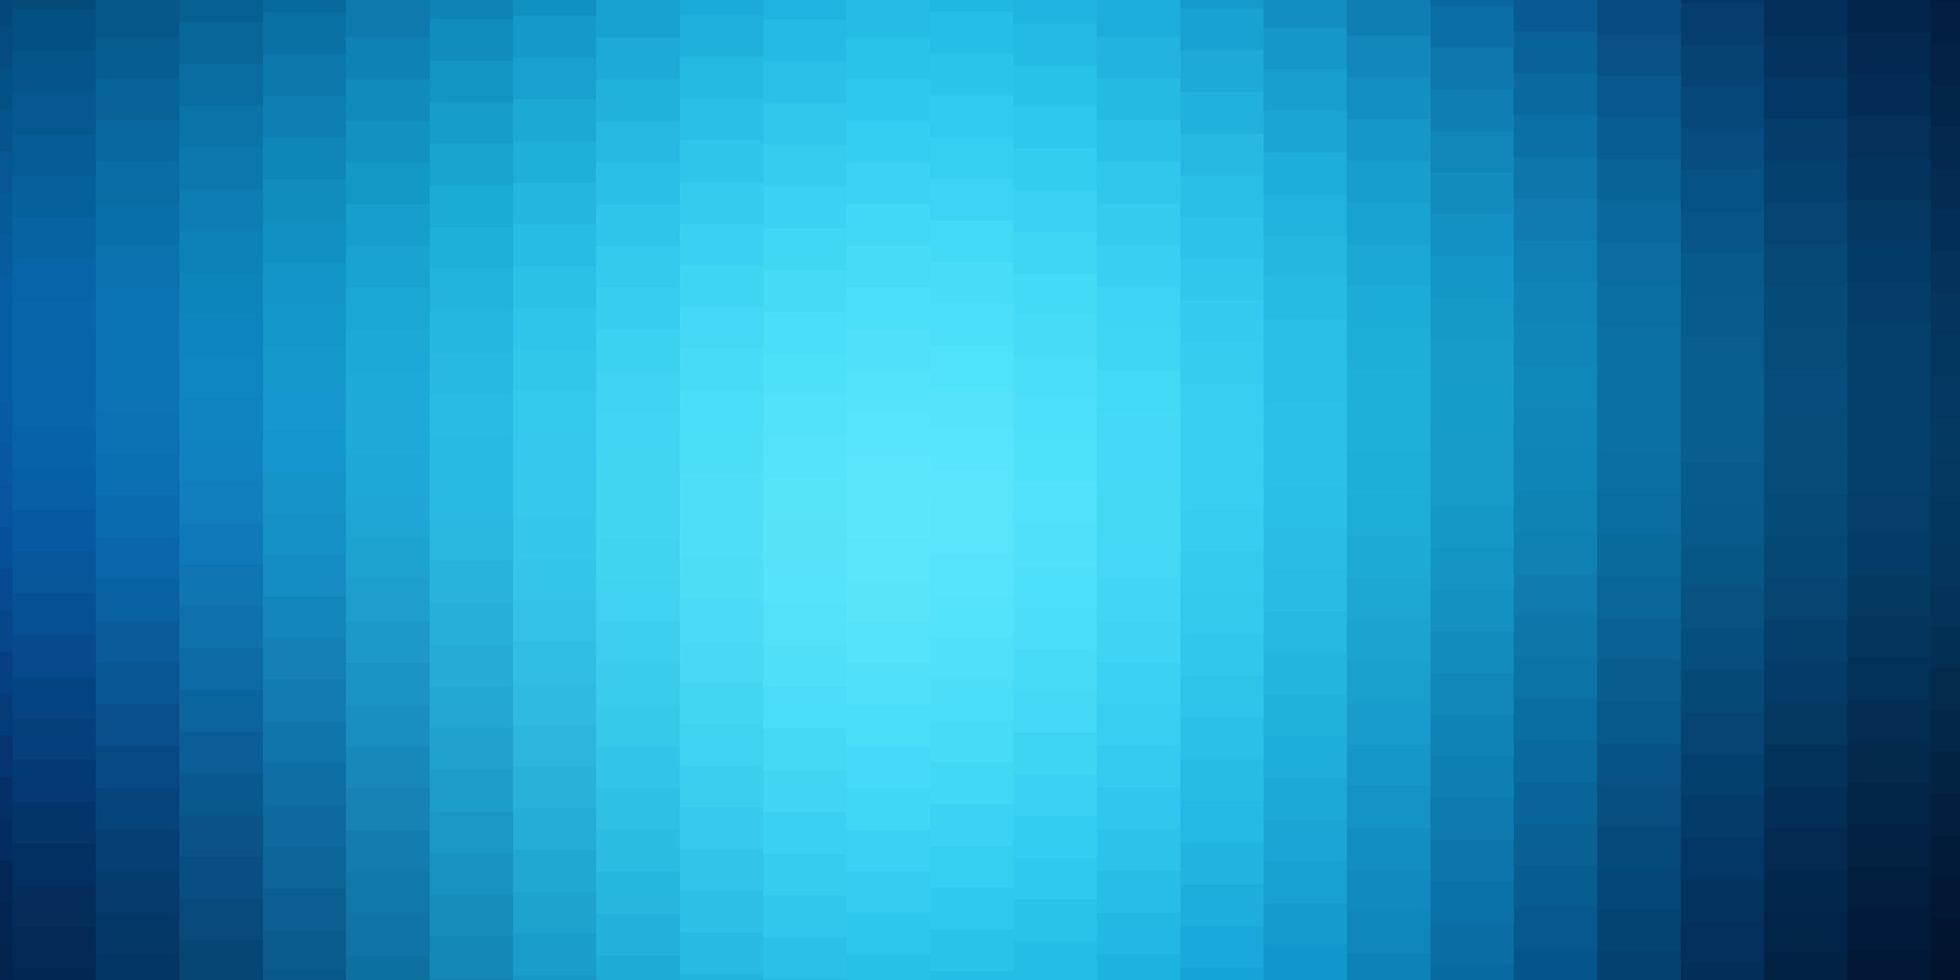 layout de vetor azul claro com linhas, retângulos